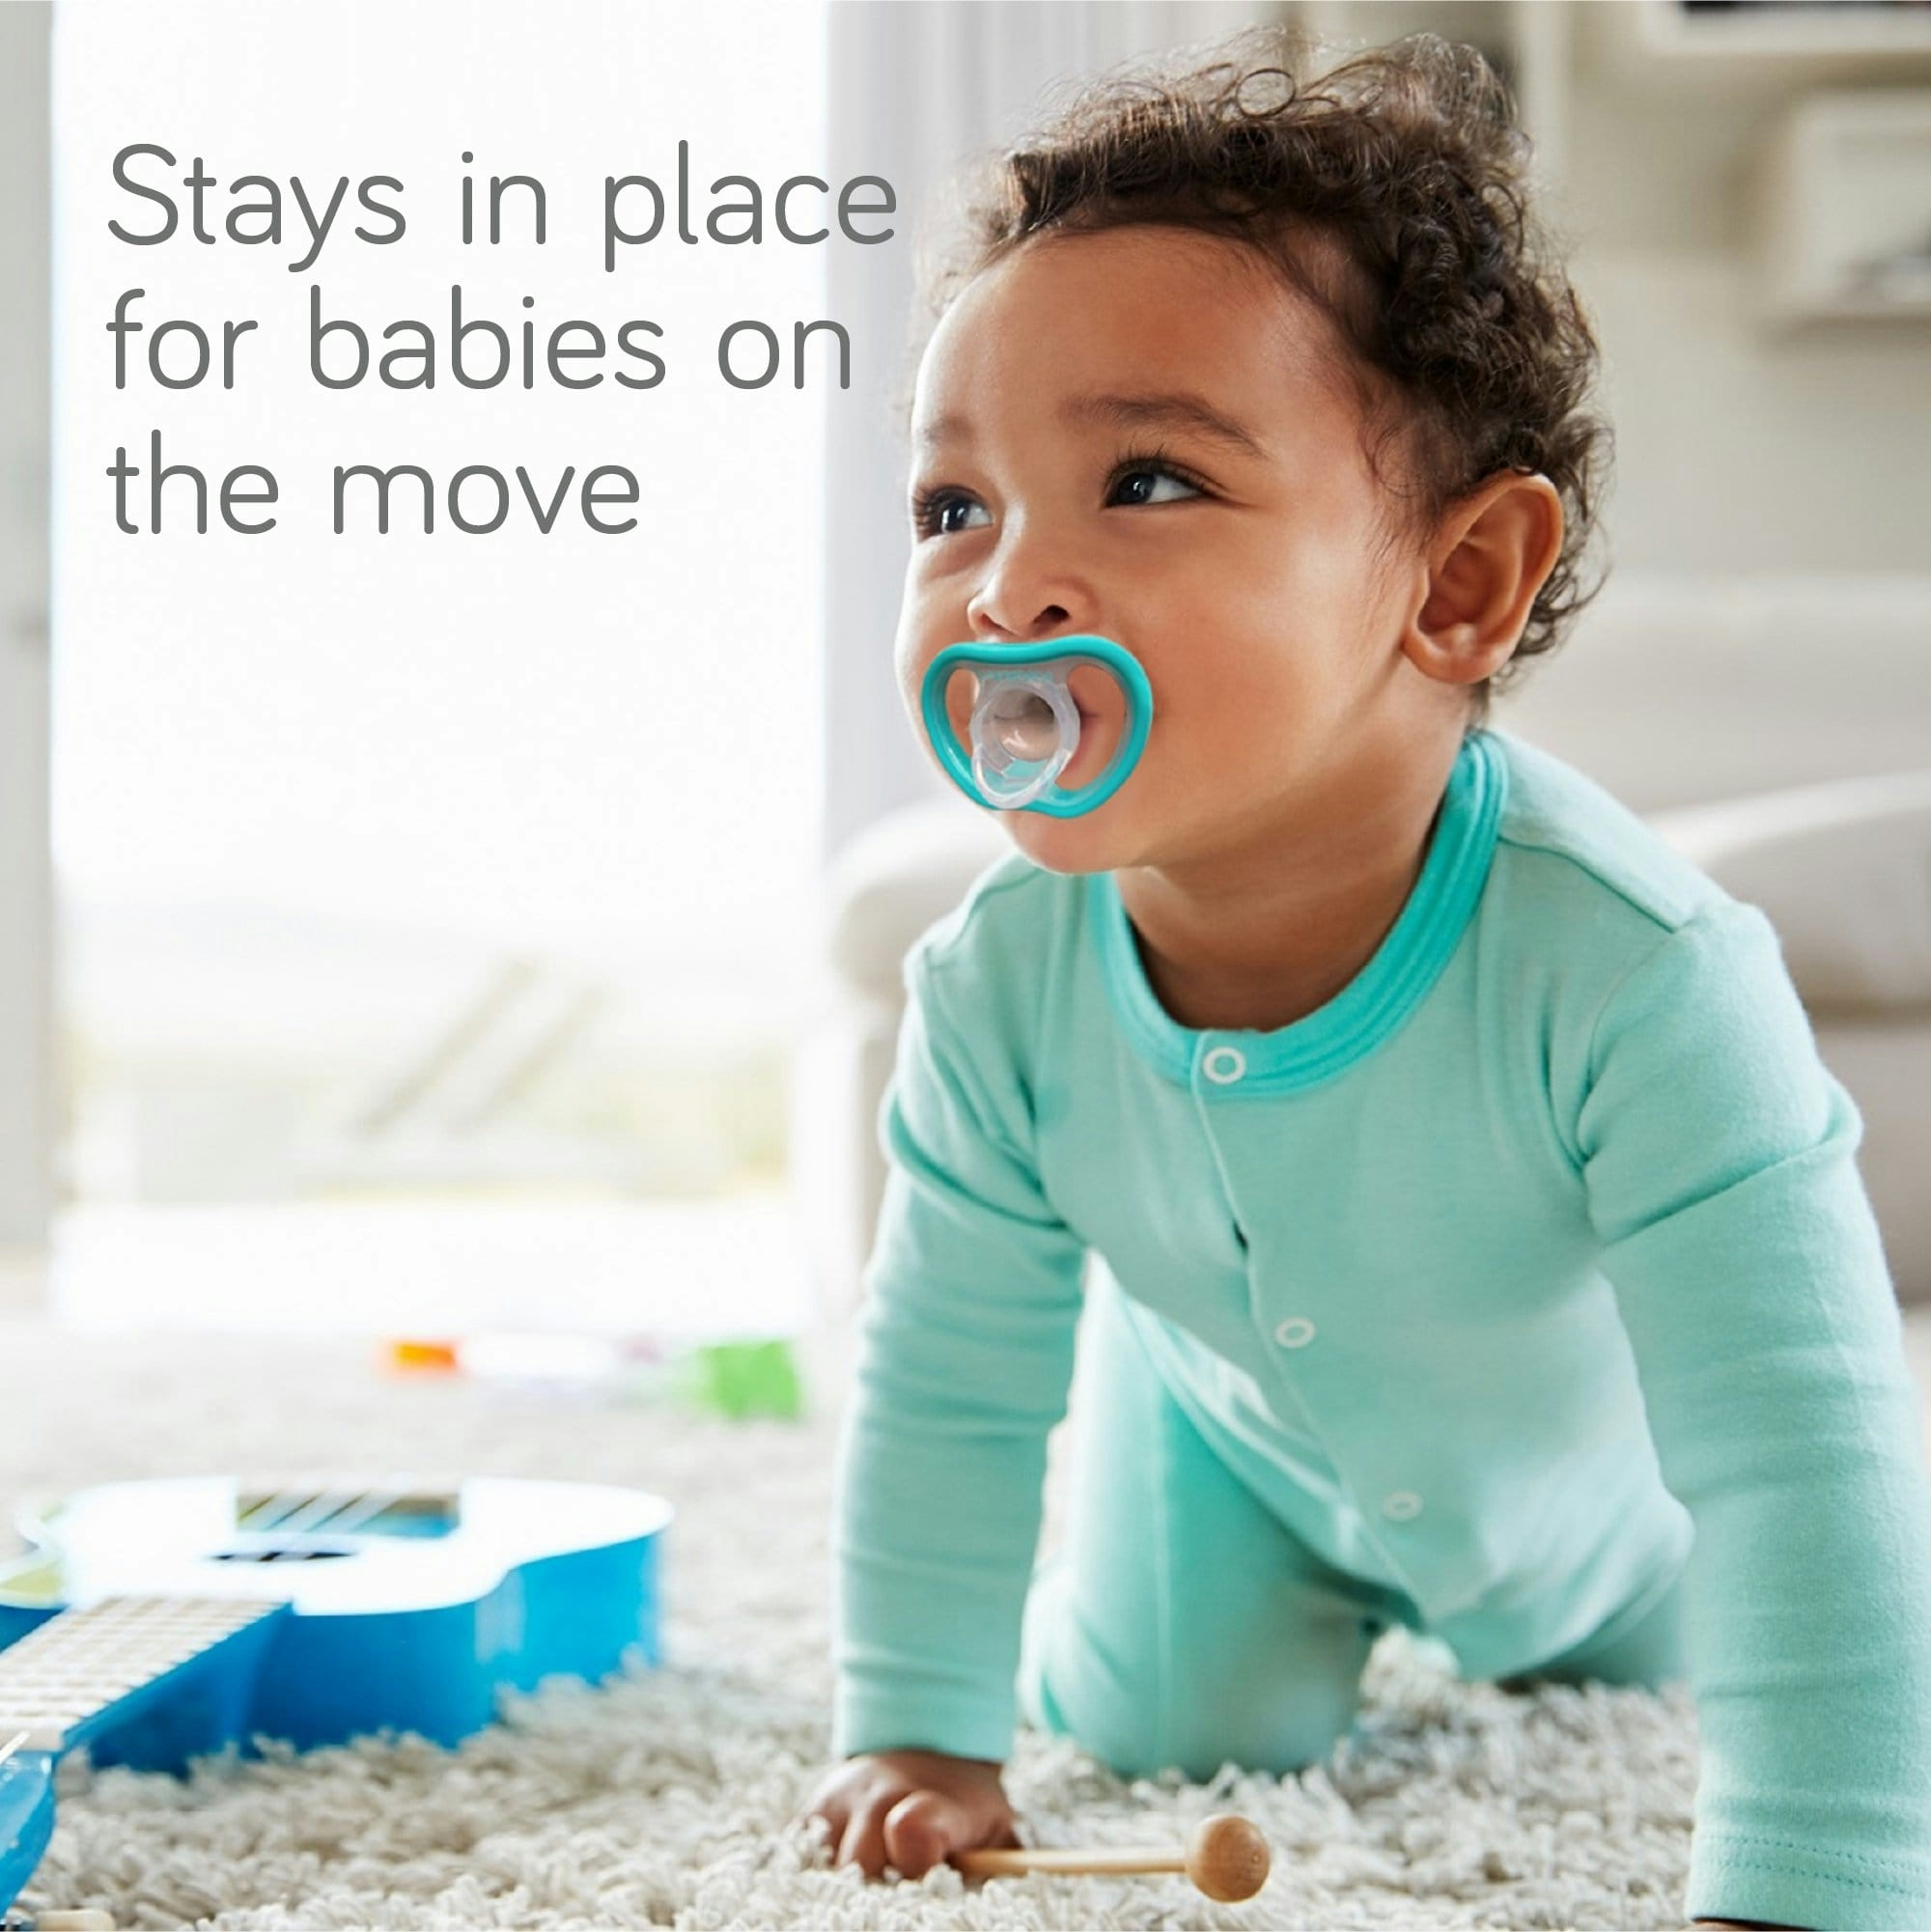 5-Piece Baby Bottle Cleaning Brush Set - BPA-Free, Ergonomic Handle,  Dishwasher